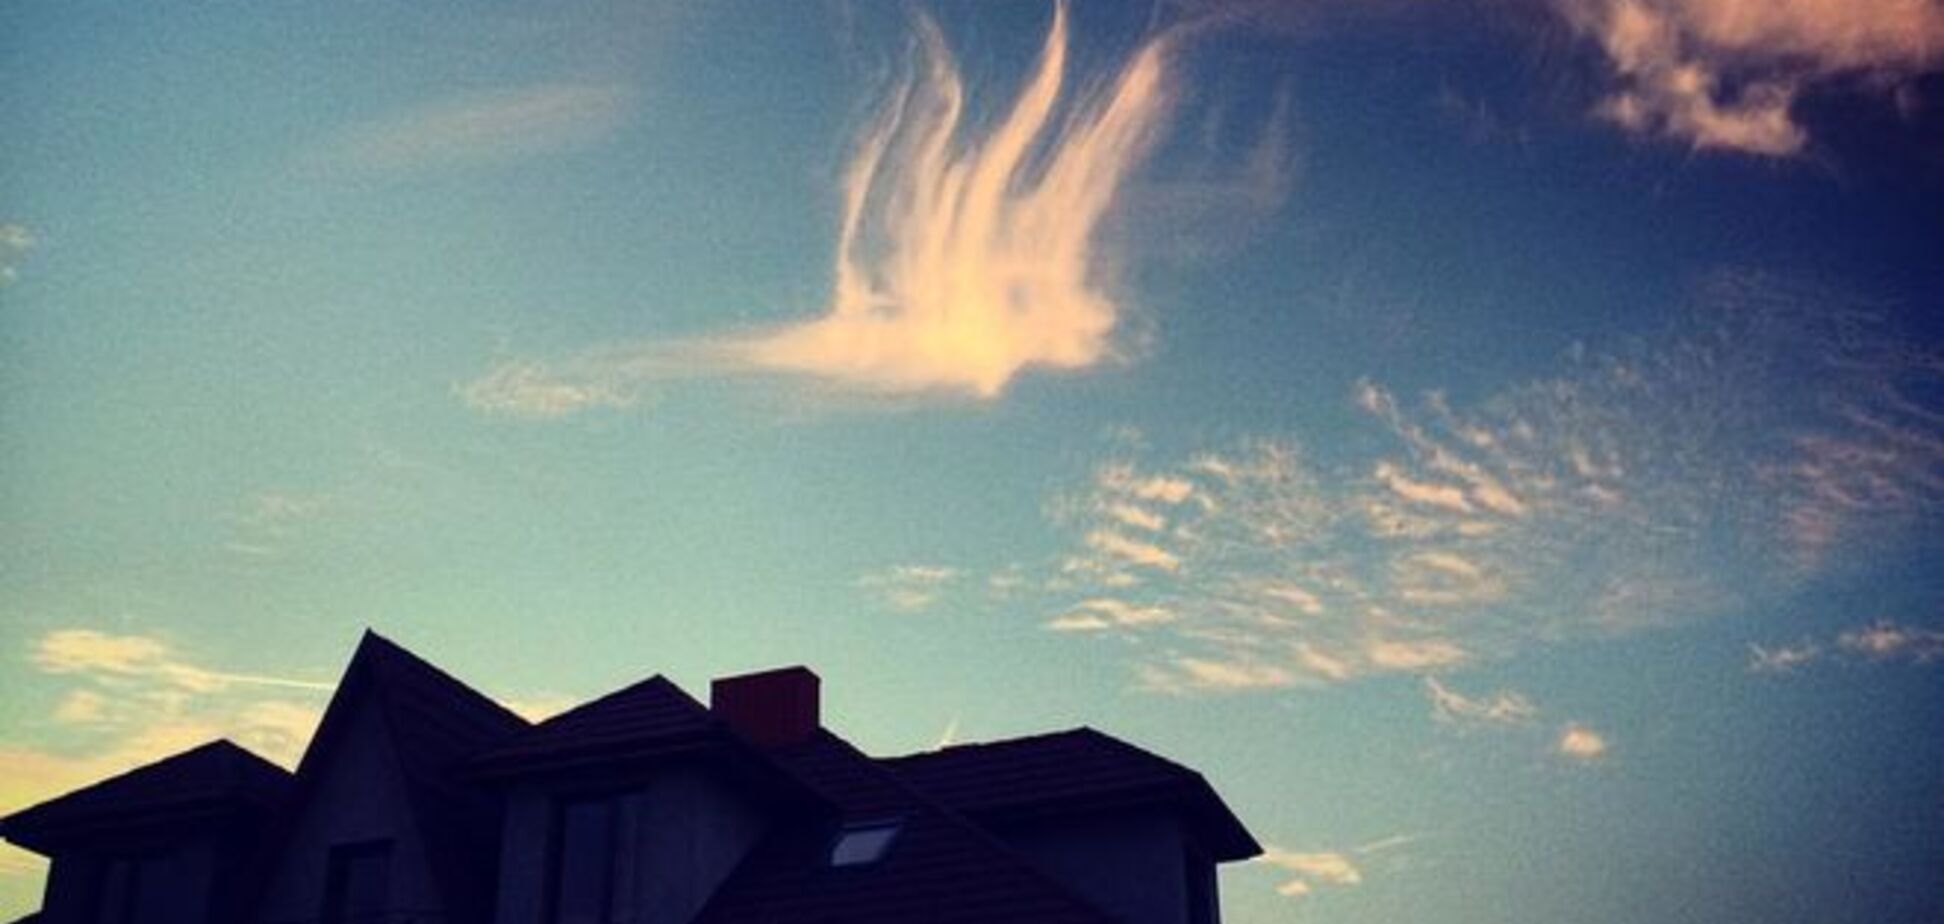 Бог вірить в Україну! У Луцьку над будинками з'явилася хмара у вигляді тризуба - фотофакт